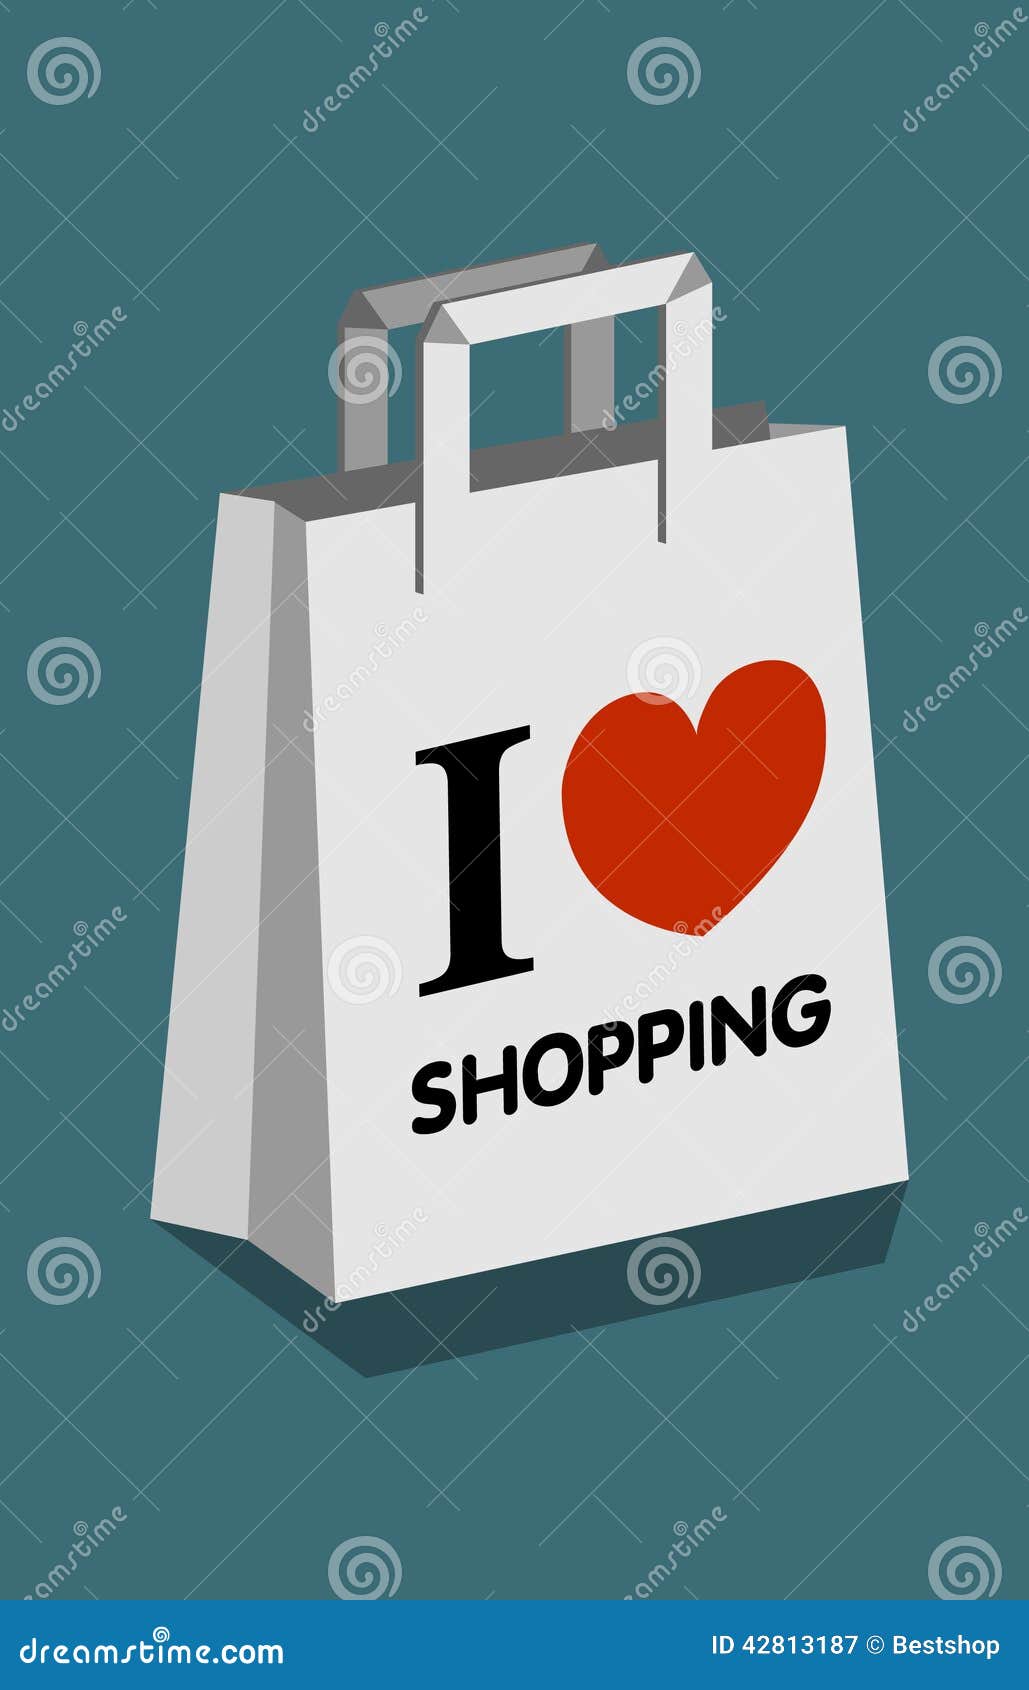 Shopping one love. Обожаю шоппинг. Я люблю шоппинг картинка. Фото Love shop. Люблю шопинг картинки прикольные.